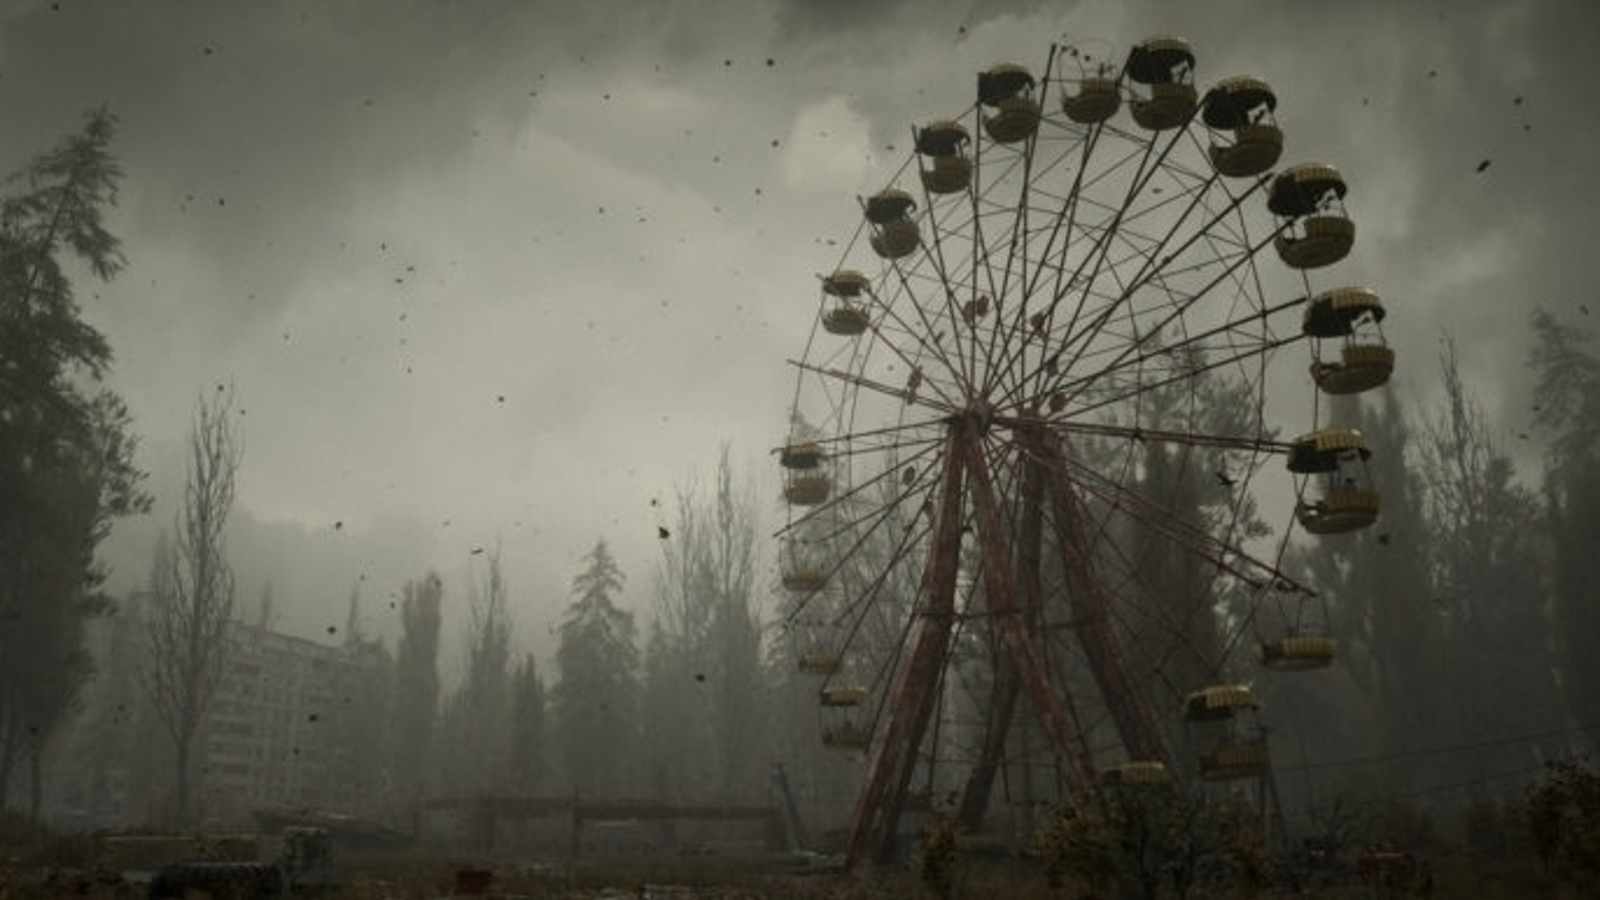 Stalker 2: Heart of Chernobyl é adiado para o final de 2022 - Games - R7  Outer Space